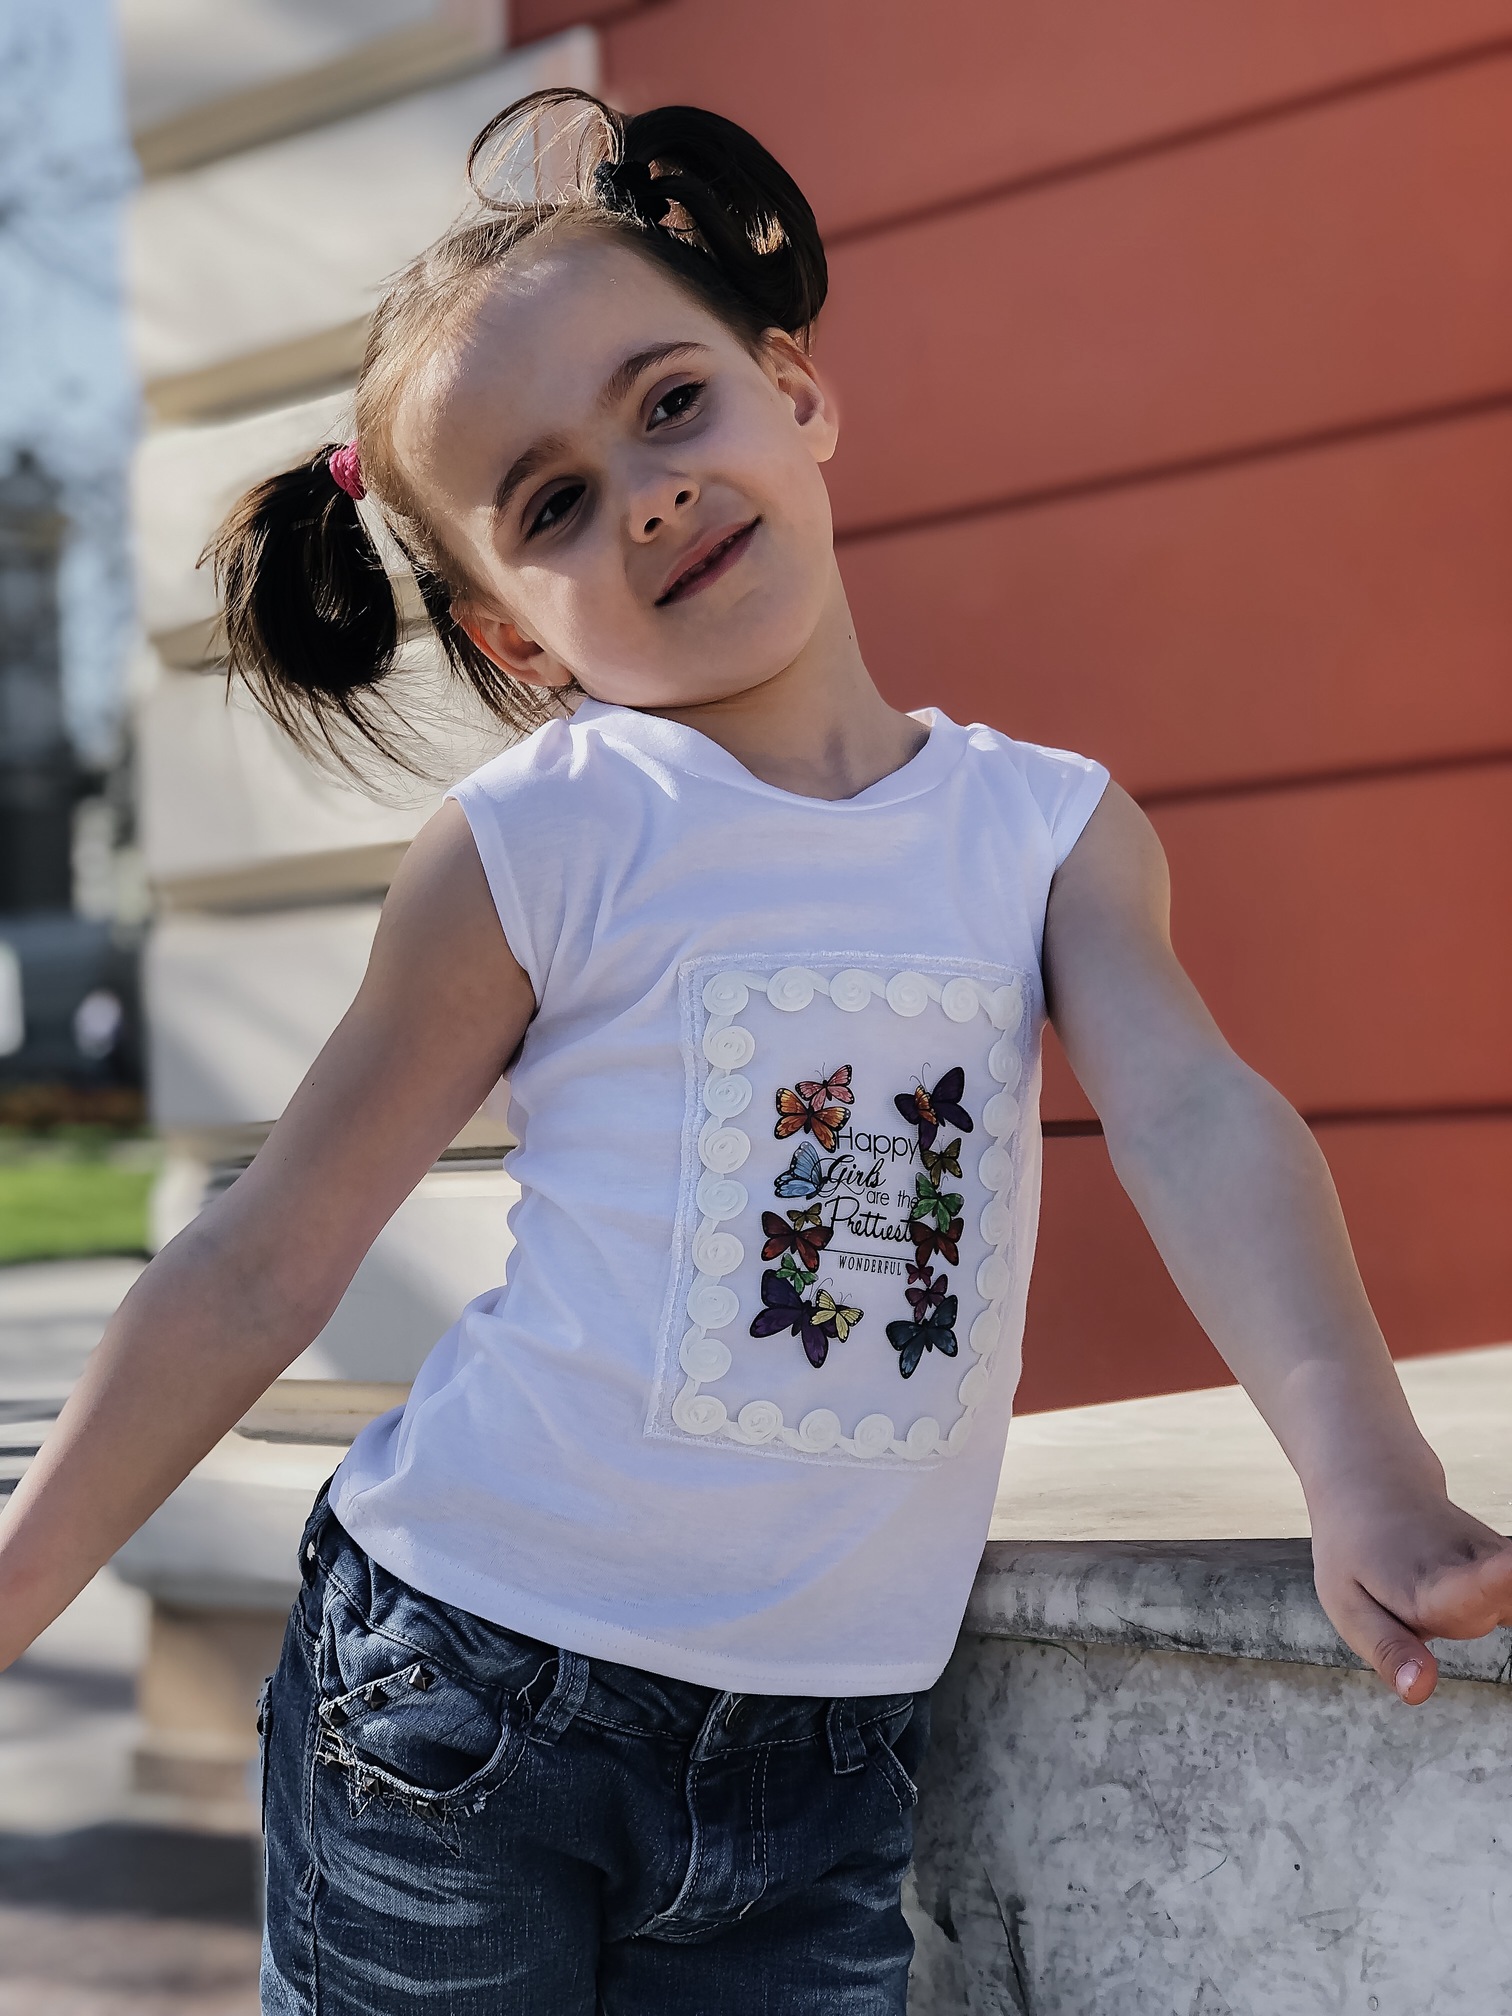   Детская футболка Вышивка Бабочки 2217, фото 1